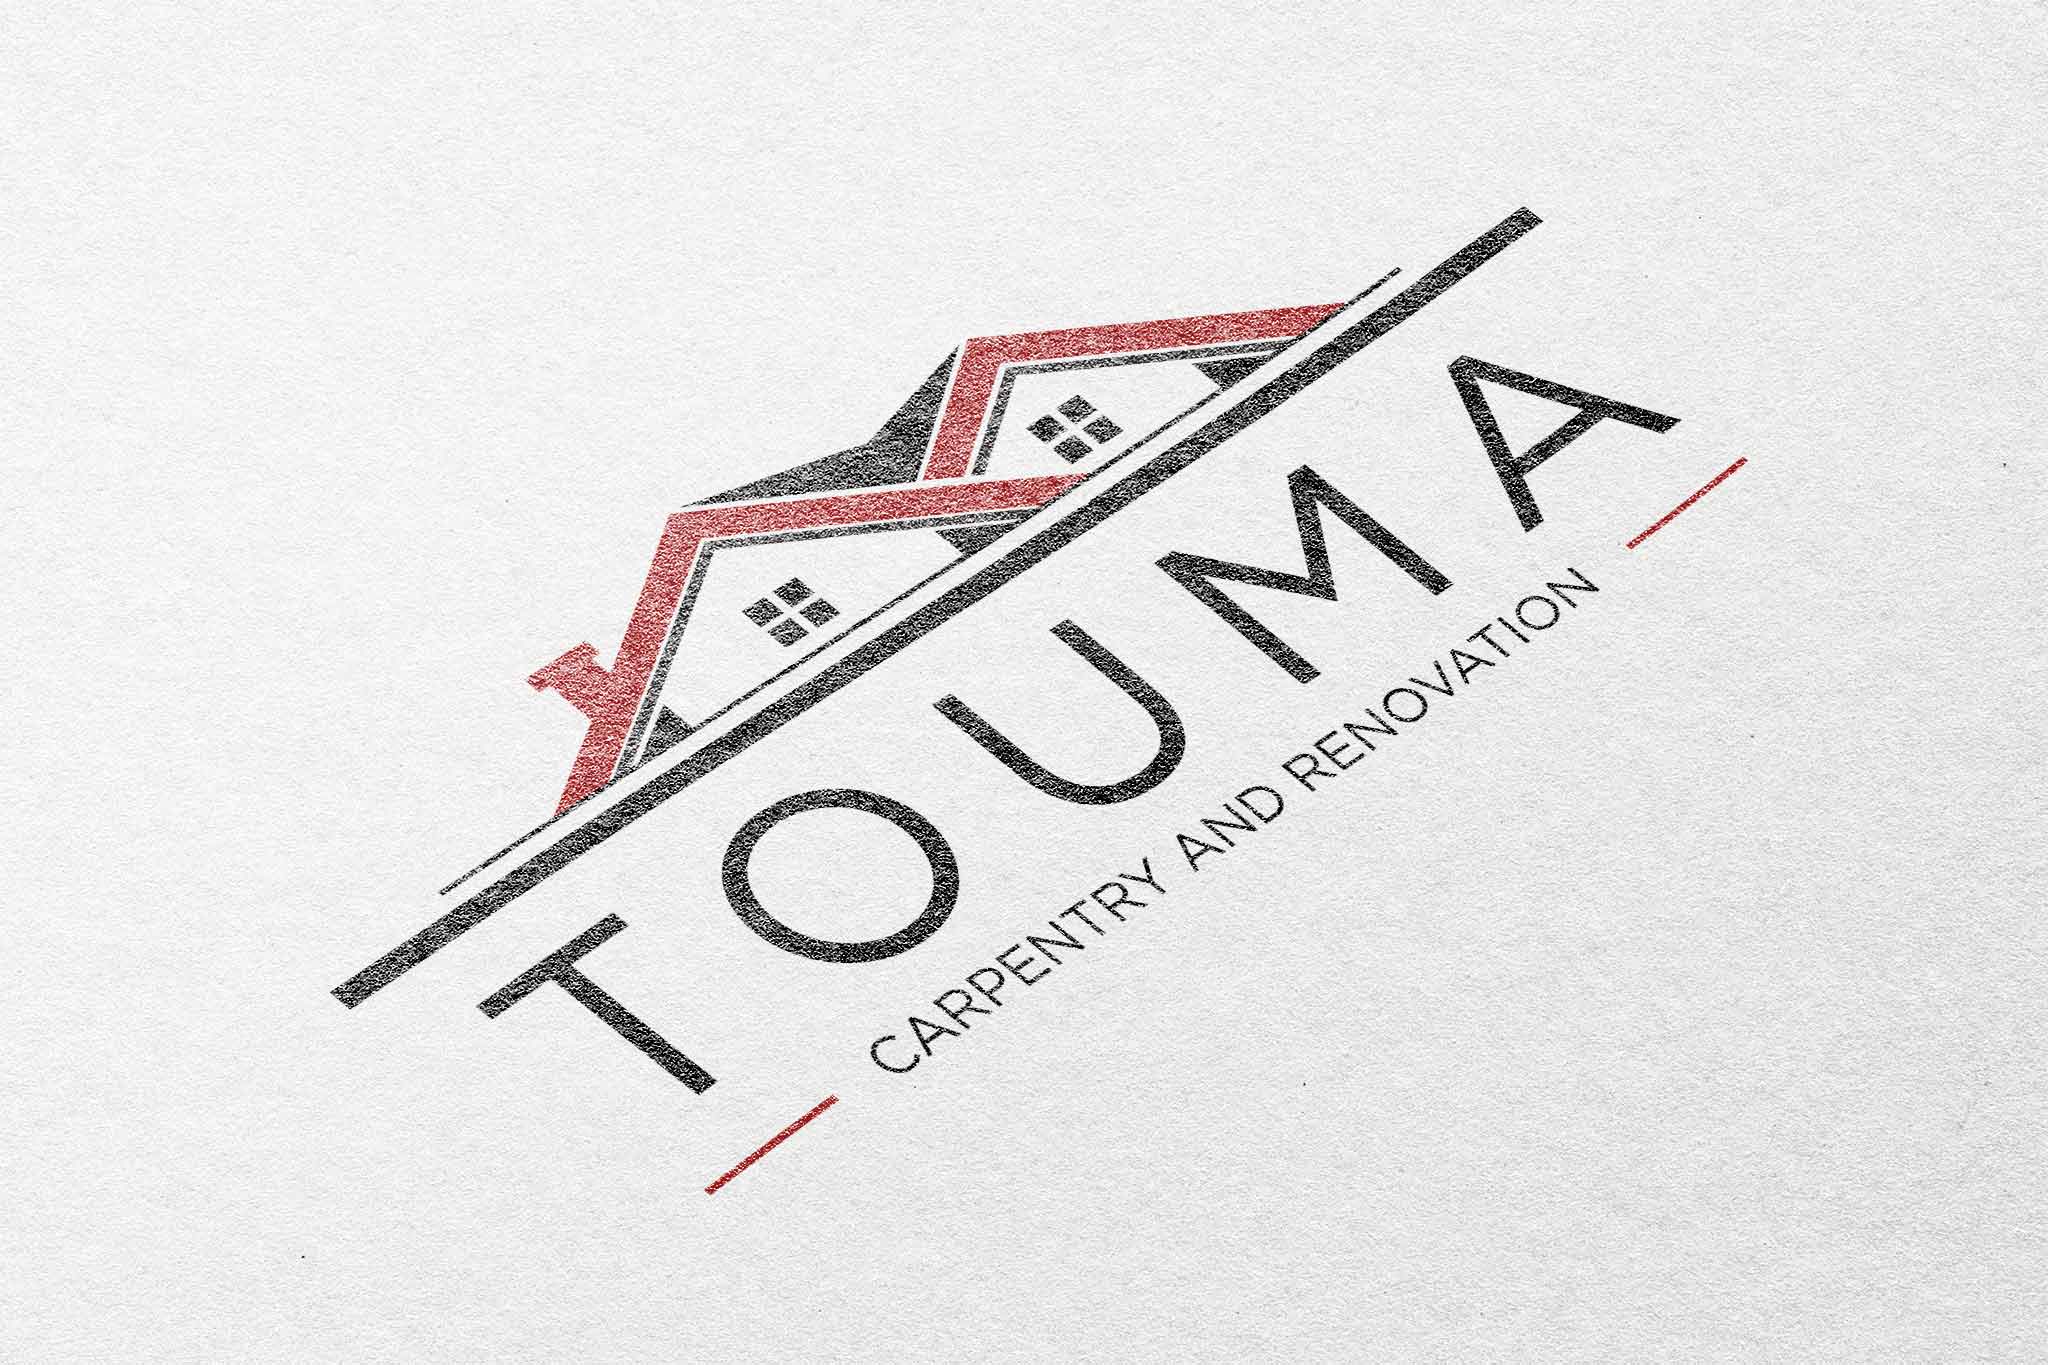 Touma Carpentry and Renovation Logo - Digital Delicate